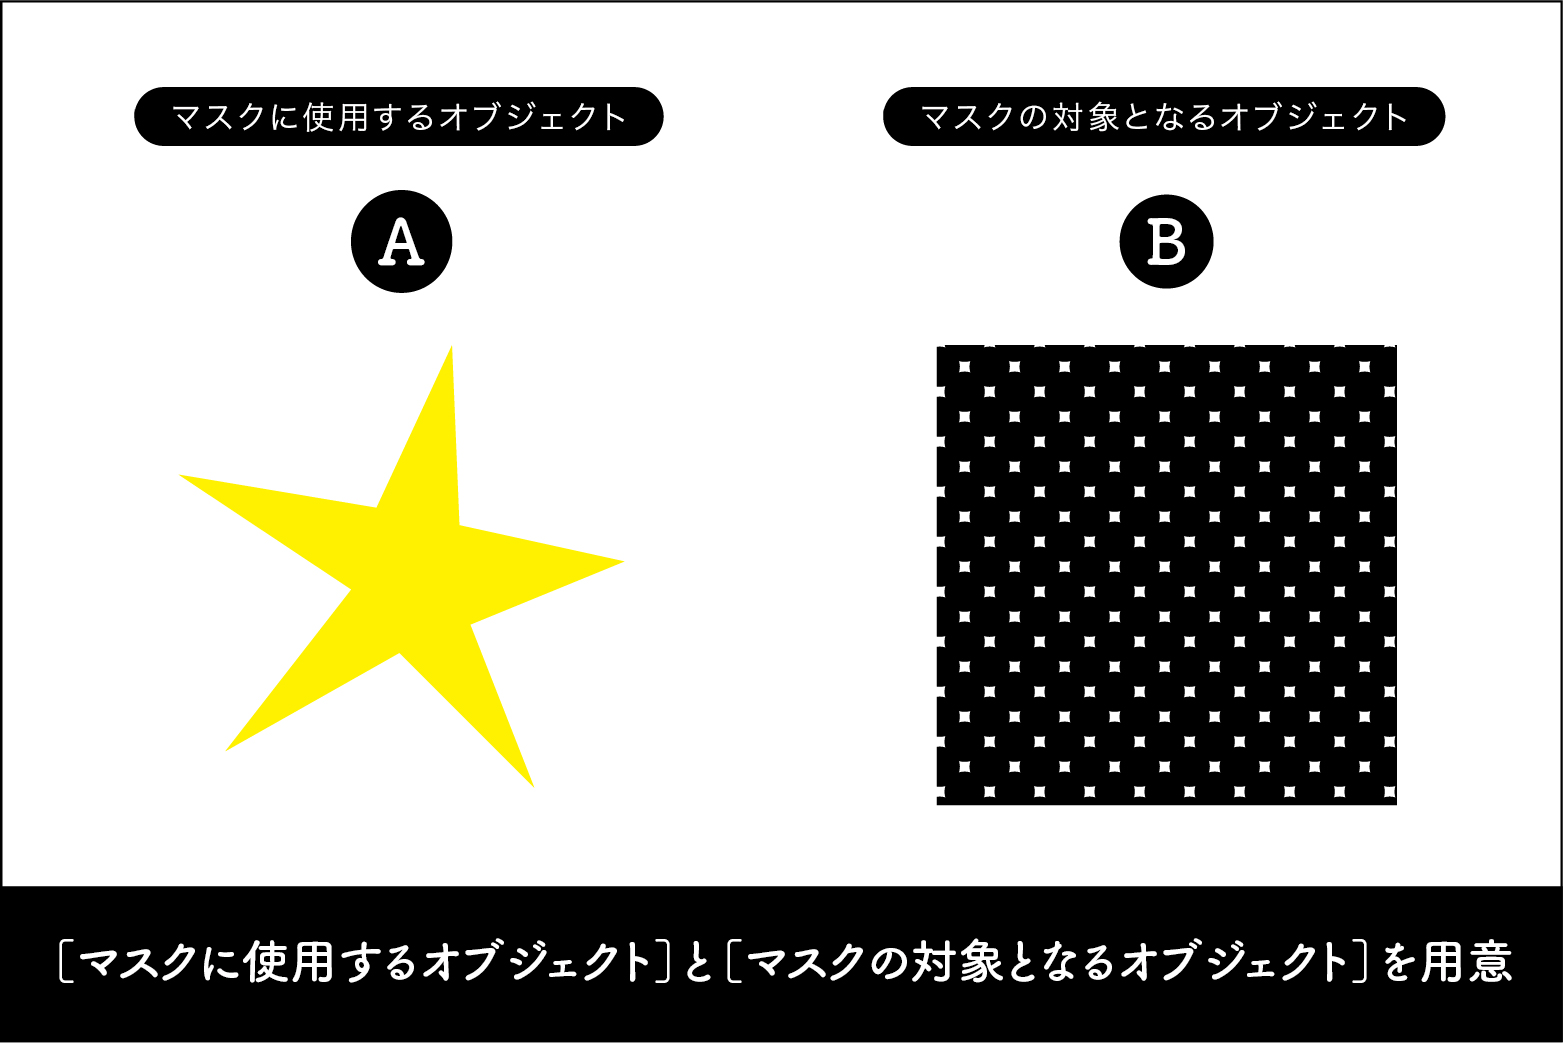 クリッピングマスクの対象となるオブジェクト（B）の上に、切り抜きたい形のオブジェクト（Aのお星さま）を用意